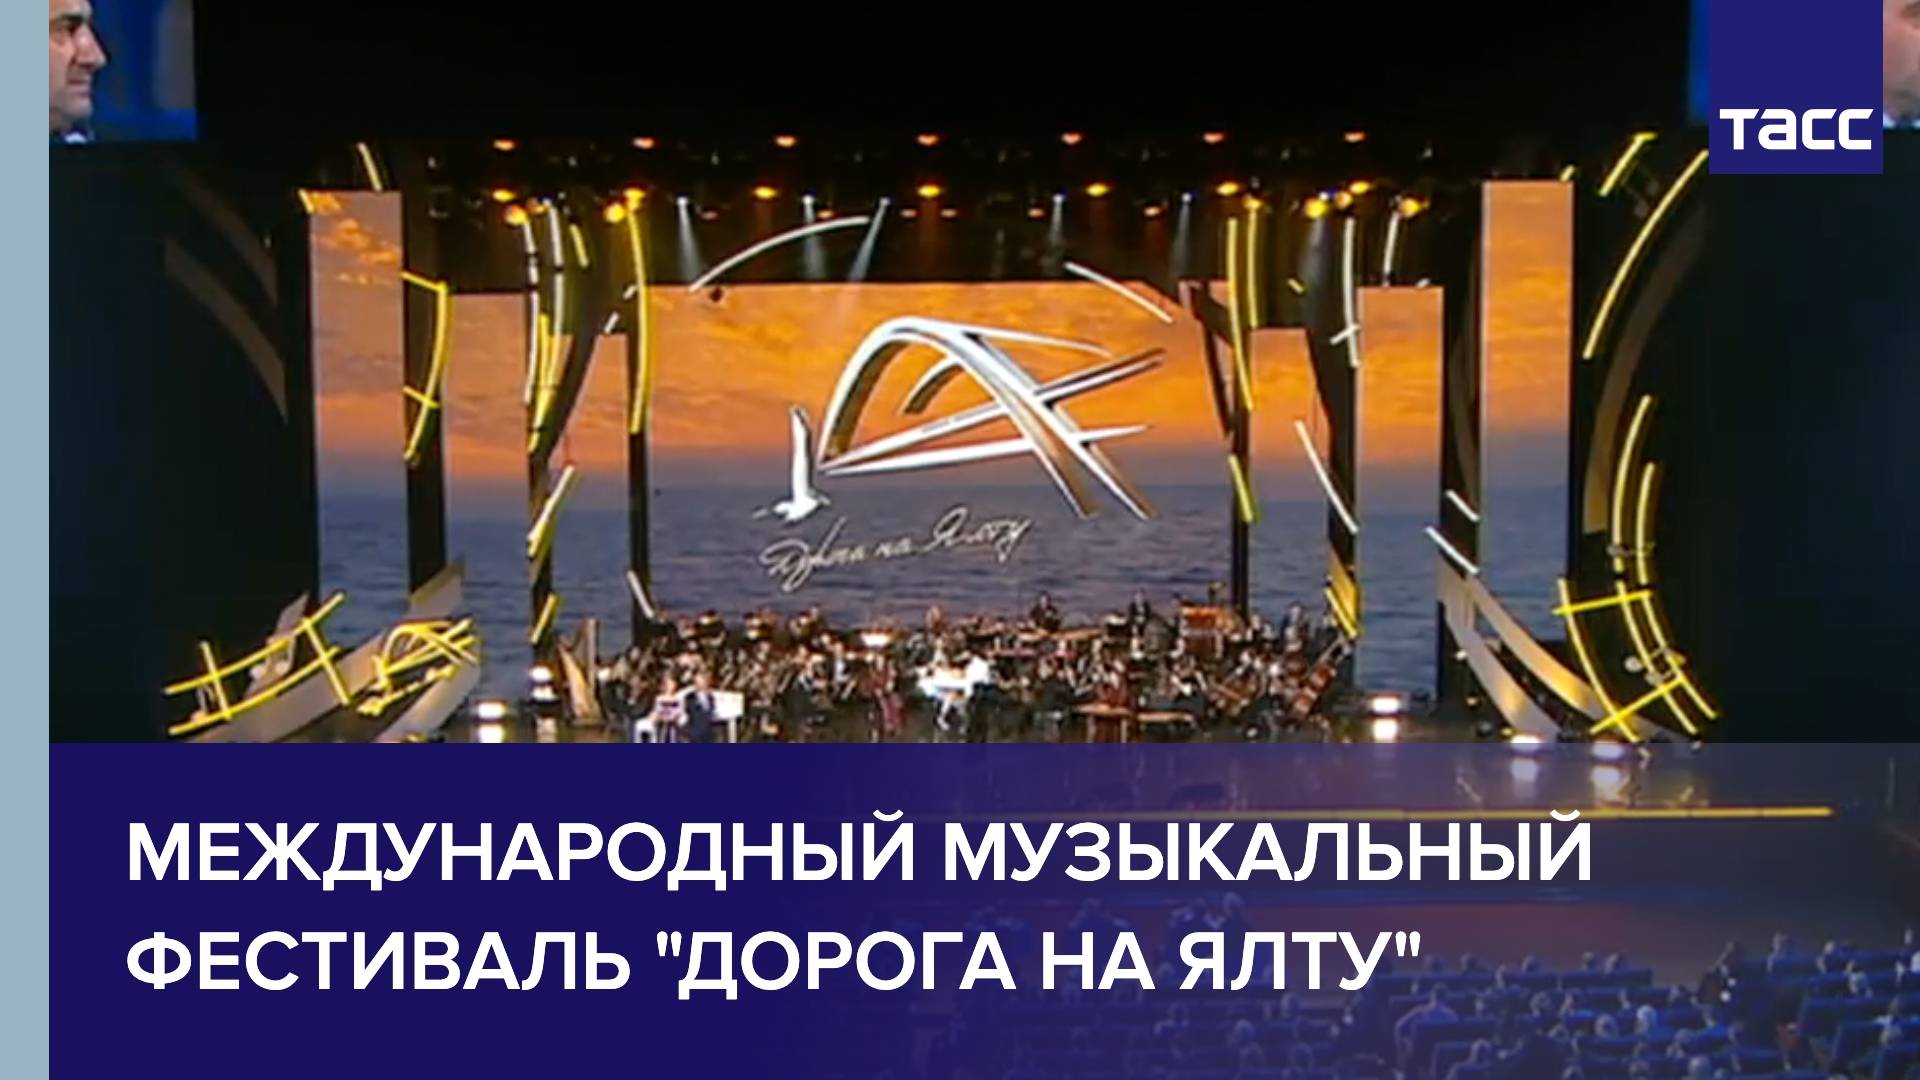 Международный музыкальный фестиваль "Дорога на Ялту"